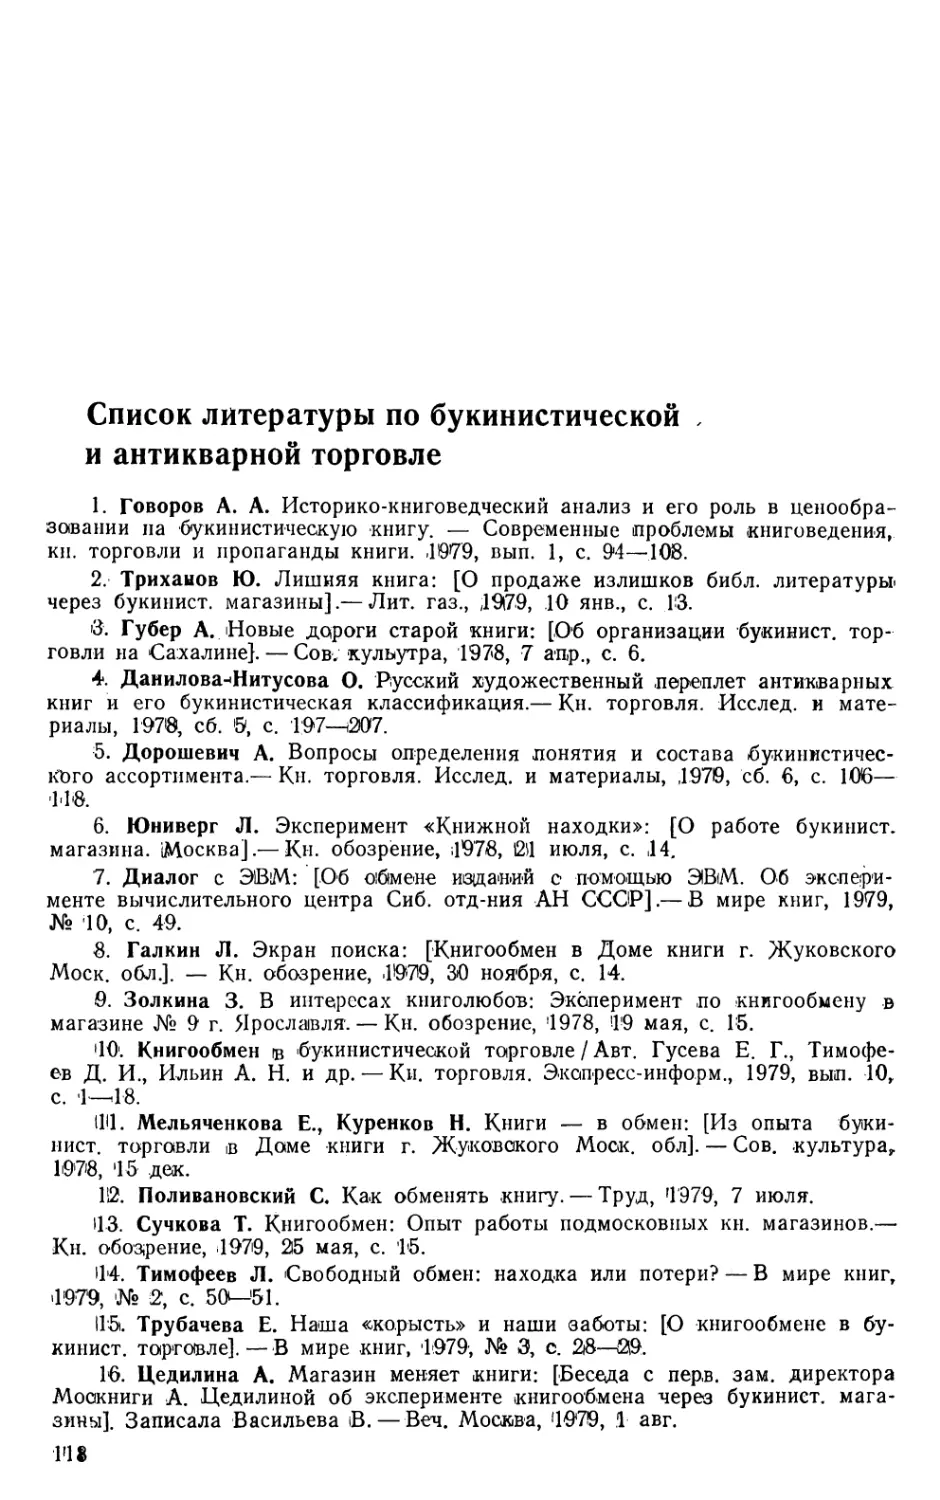 Список литературы по букинистической и антикварной торговле